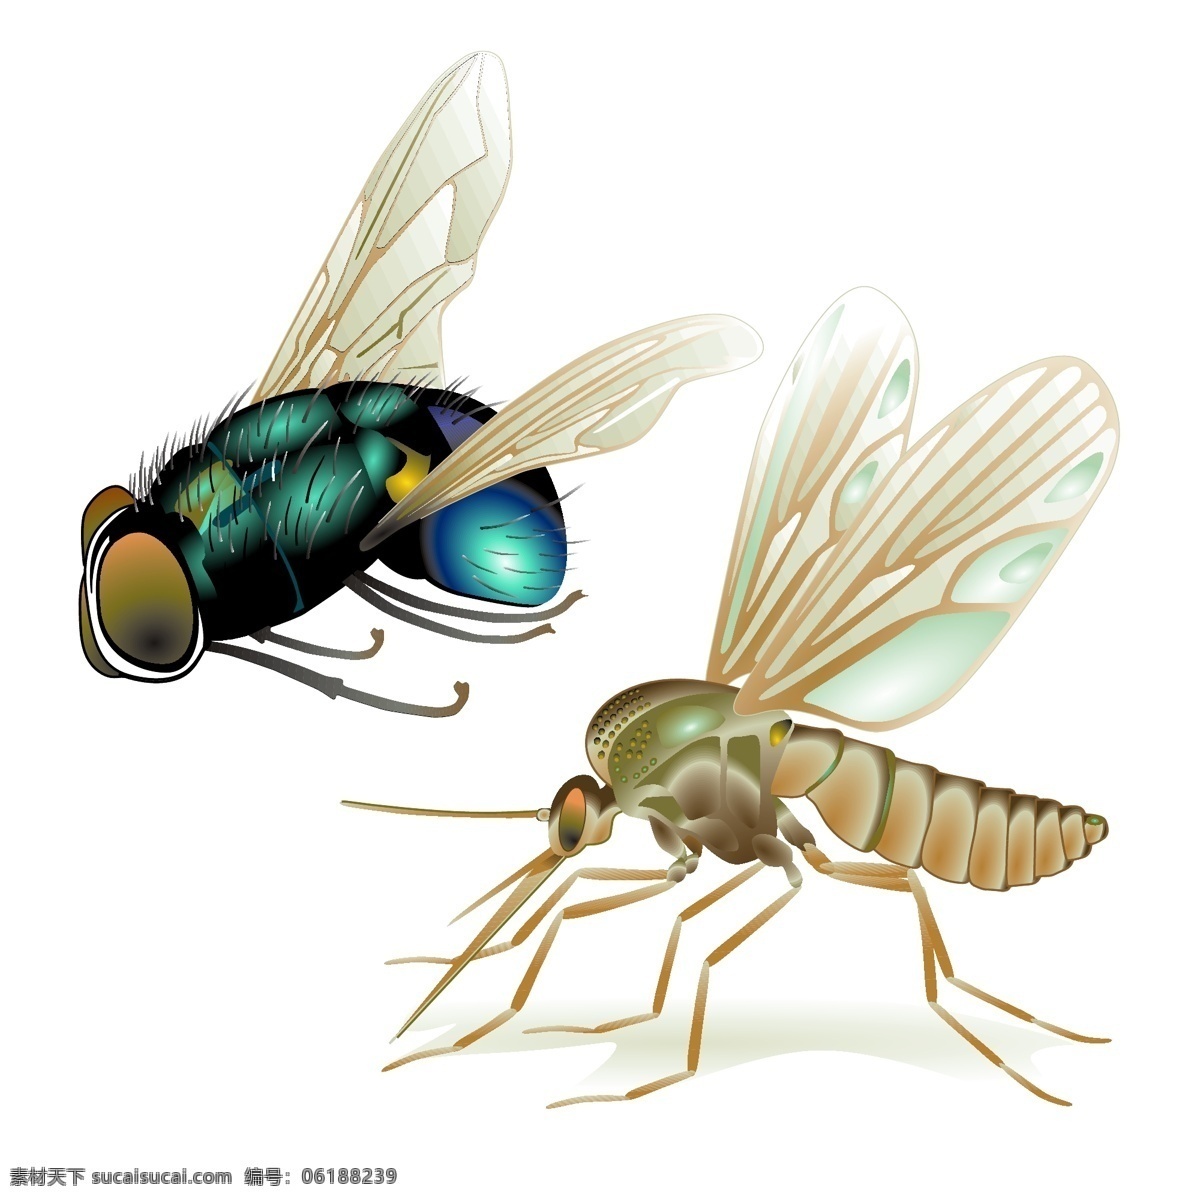 高清 苍蝇 蚊子 矢量 昆虫 透明翅膀 写实 矢量图 其他矢量图